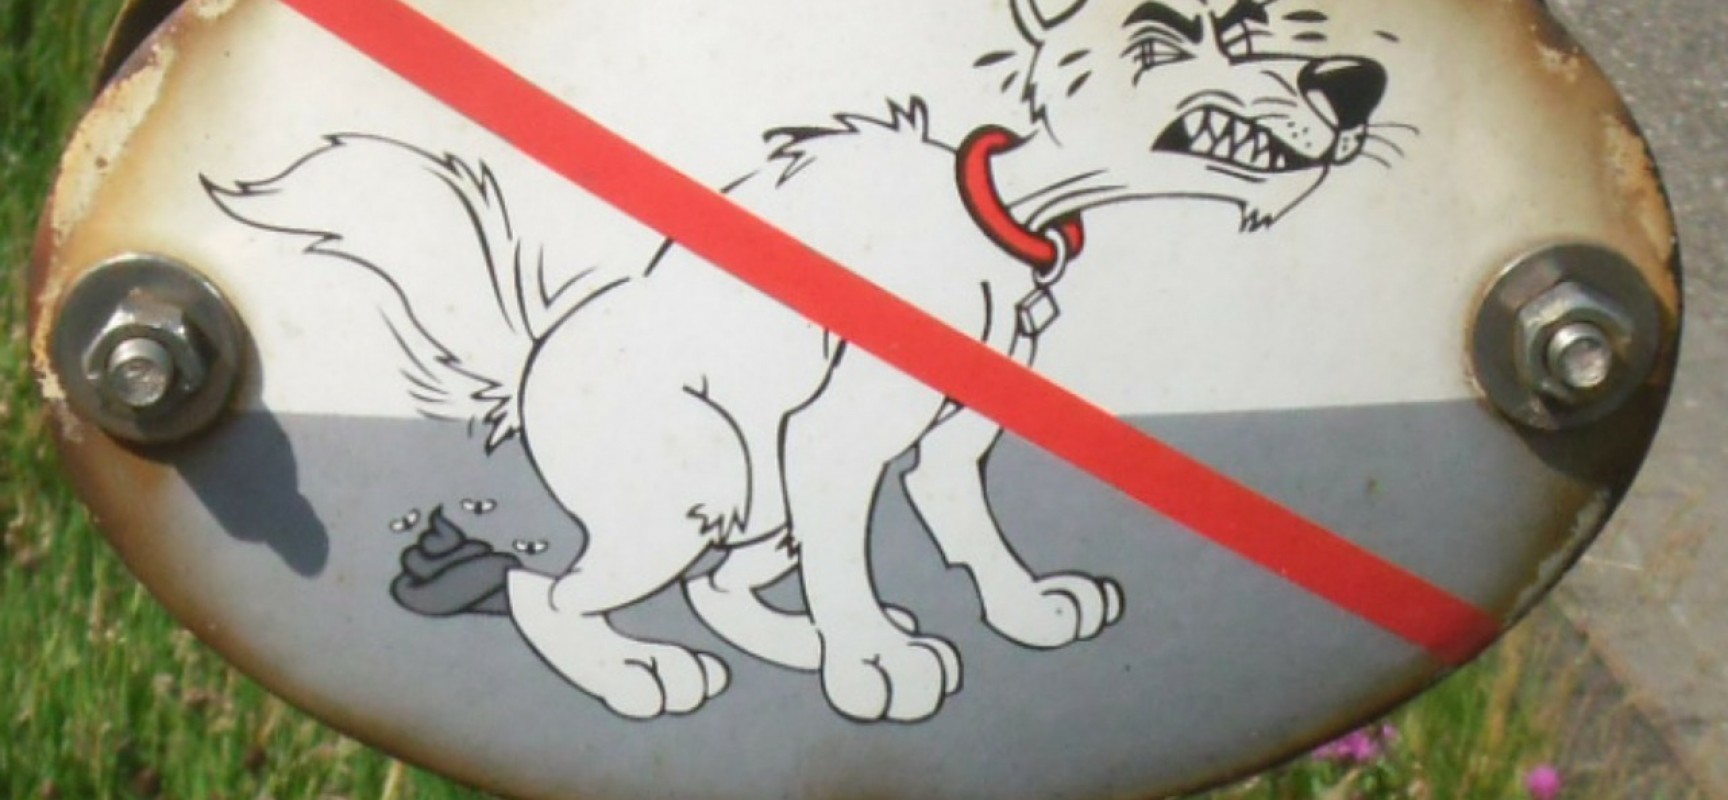 Sils: Hundekot gibt Anlaß für Reklamationen